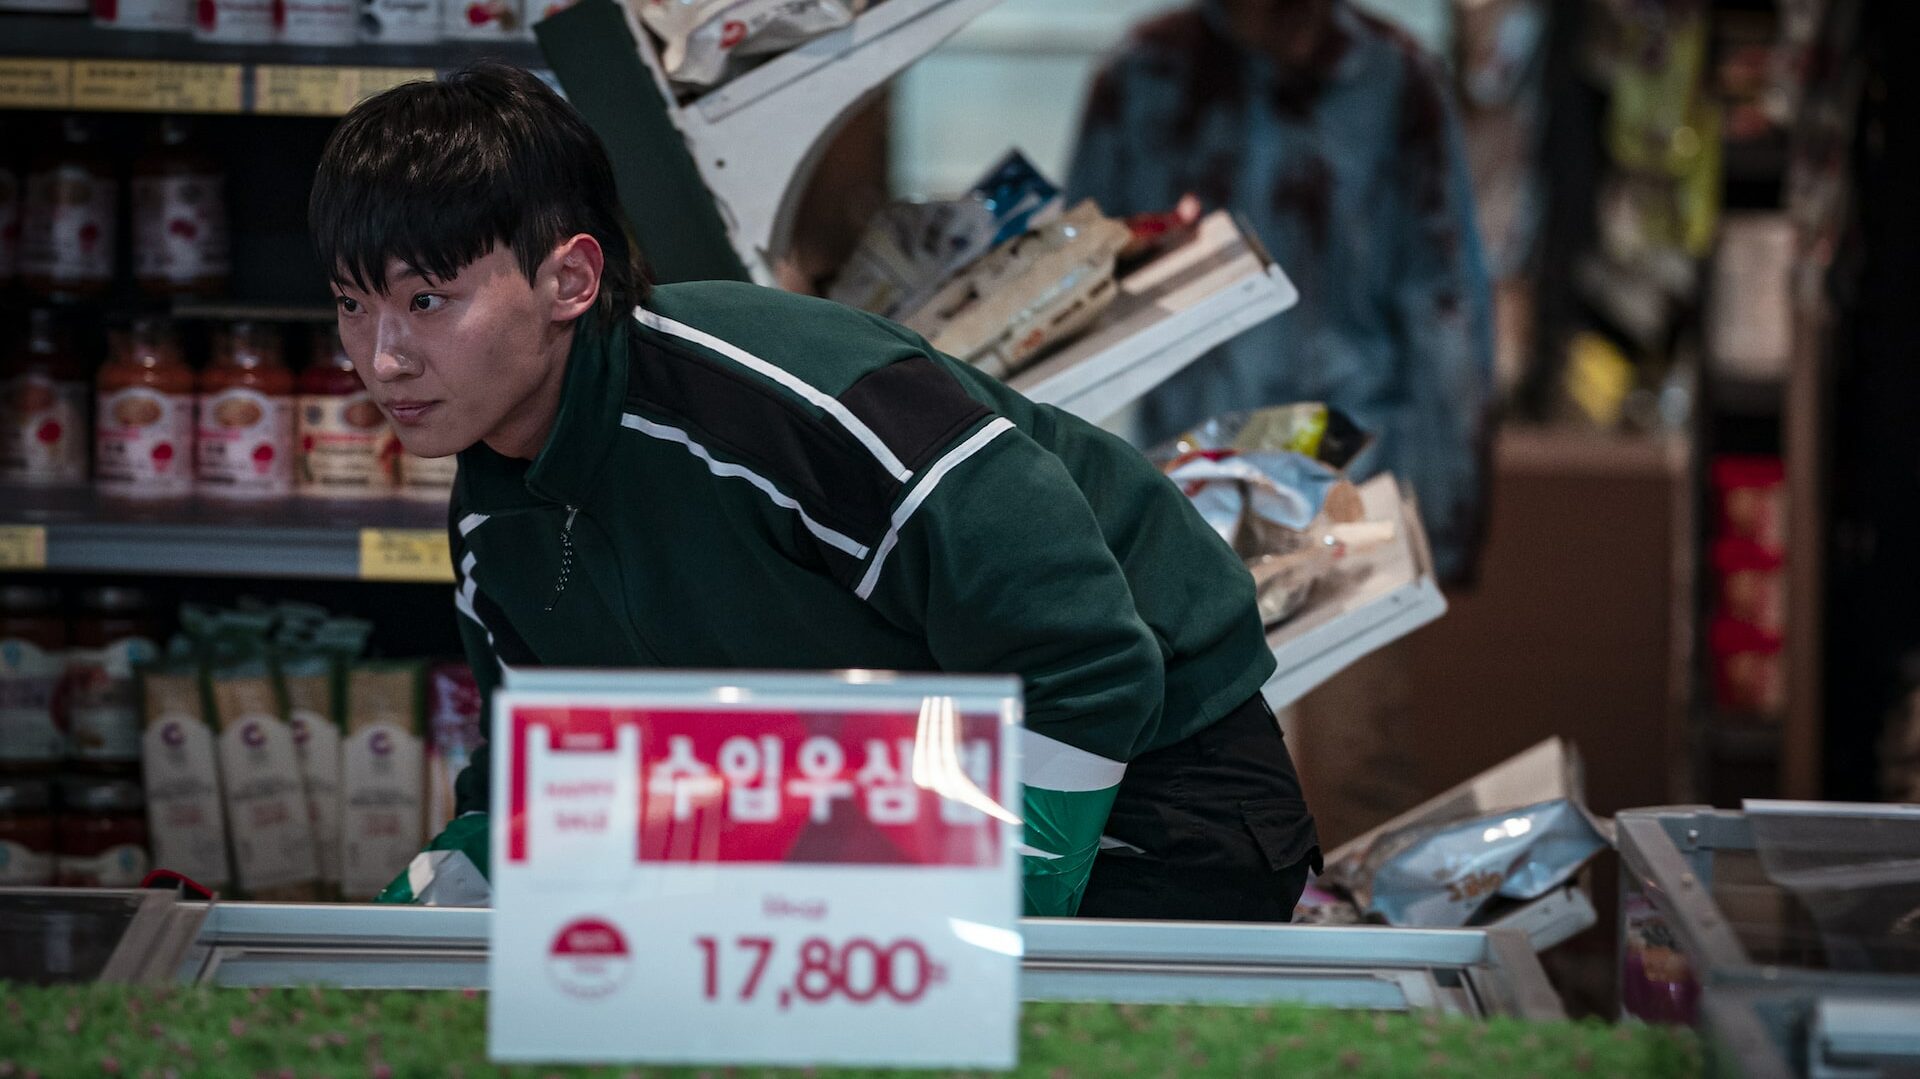 Alive: Conheça o novo sucesso coreano da Netflix - Notícias de